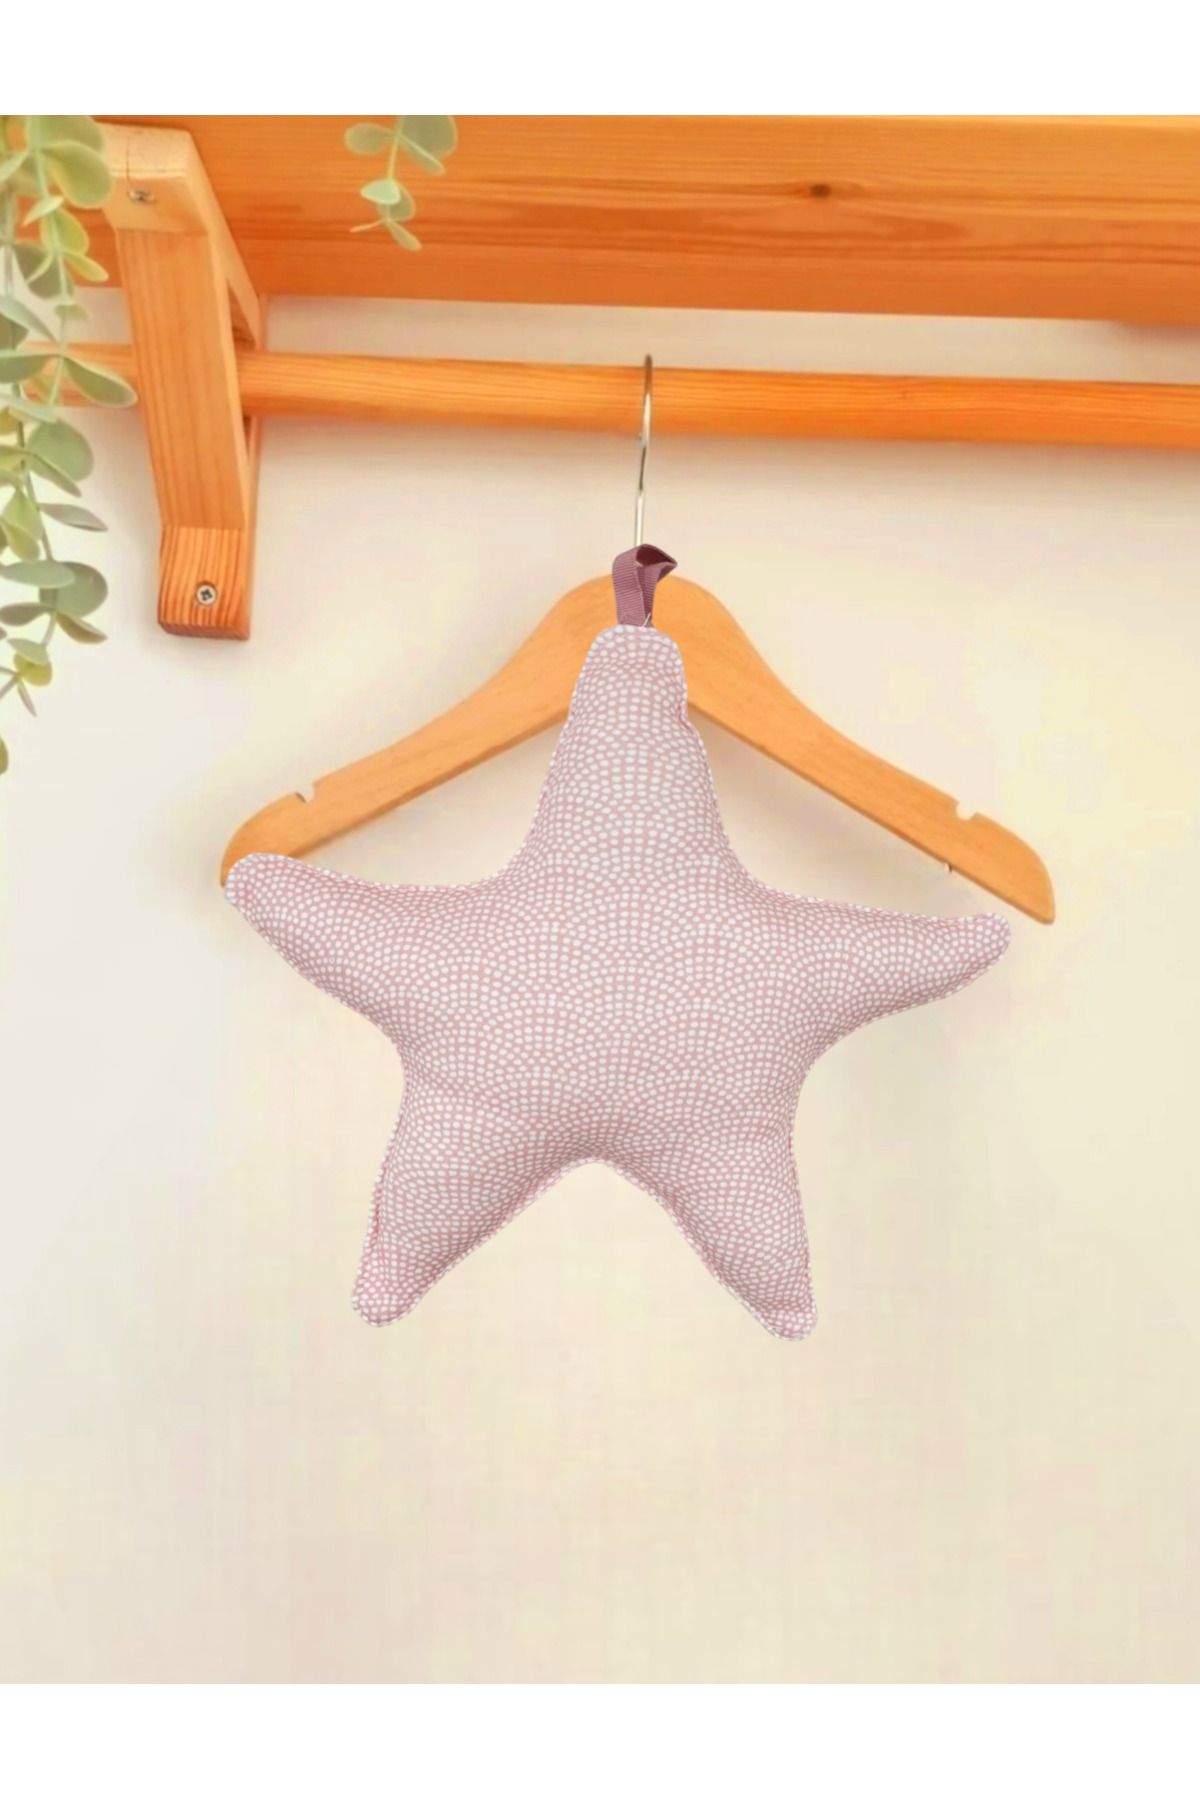 Alpar Tekstil Dekoratif Yıldız Kız Erkek Bebek/çocuk Odası Yastığı - Benekli Pembe